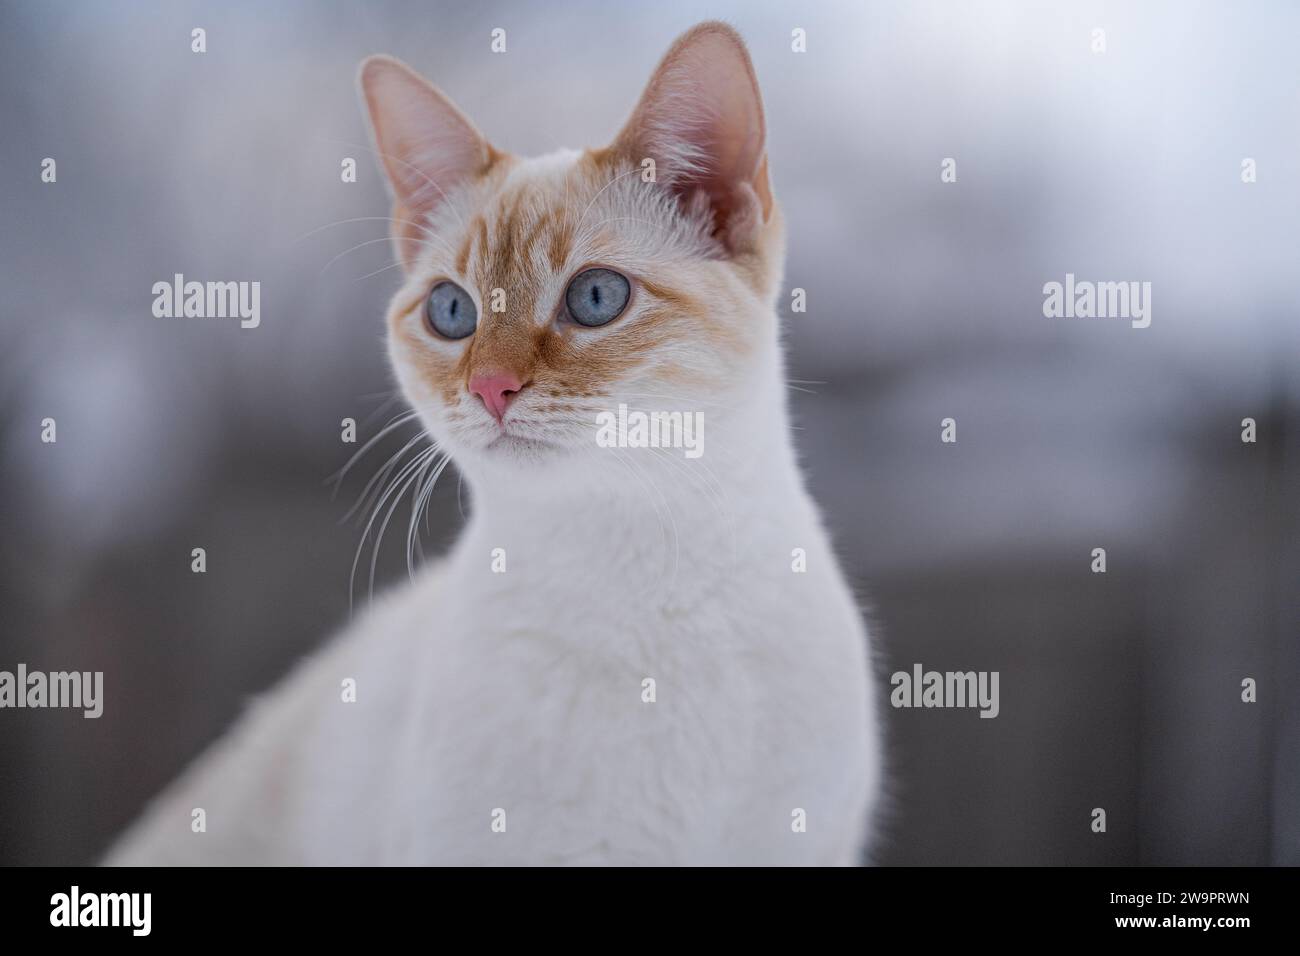 Gattino siamese con occhi blu brillante gatto bianco Red Point all'esterno di adorabili volti e whisky Foto Stock